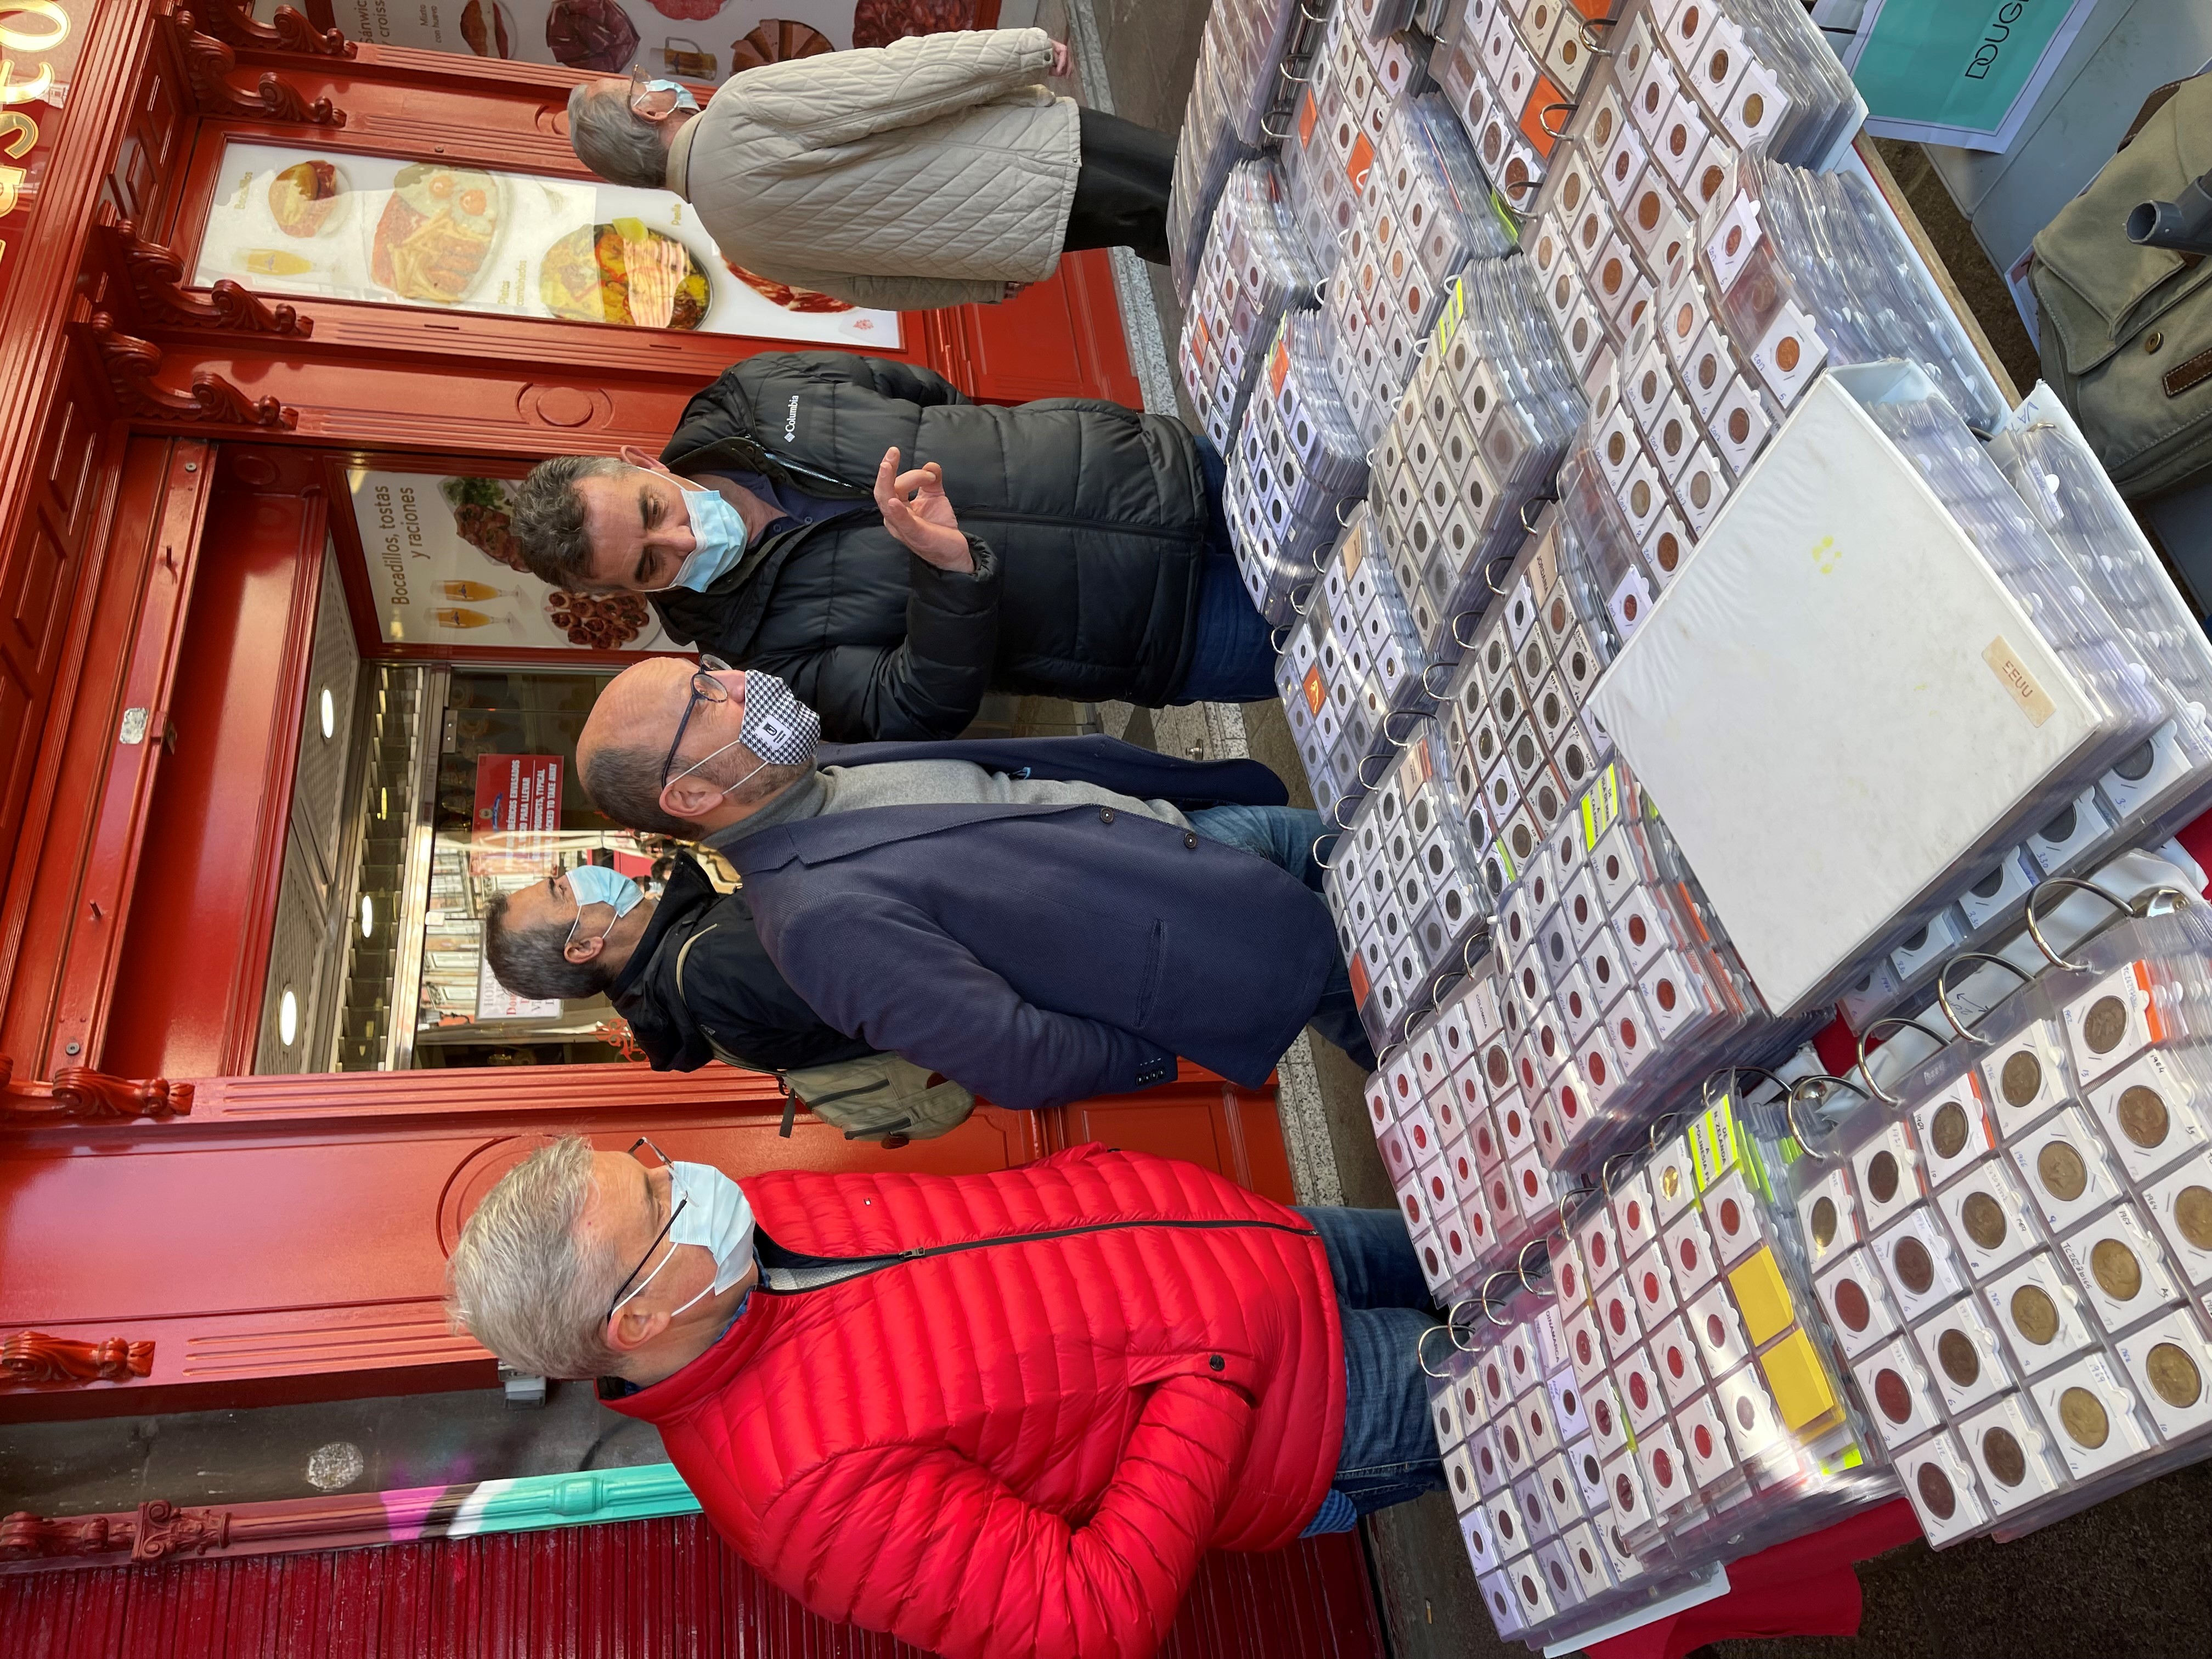 confirmar compañera de clases Autorizar Los puestos de filatelia y numismática regresan a su tradicional  localización en la plaza Mayor - Ayuntamiento de Madrid